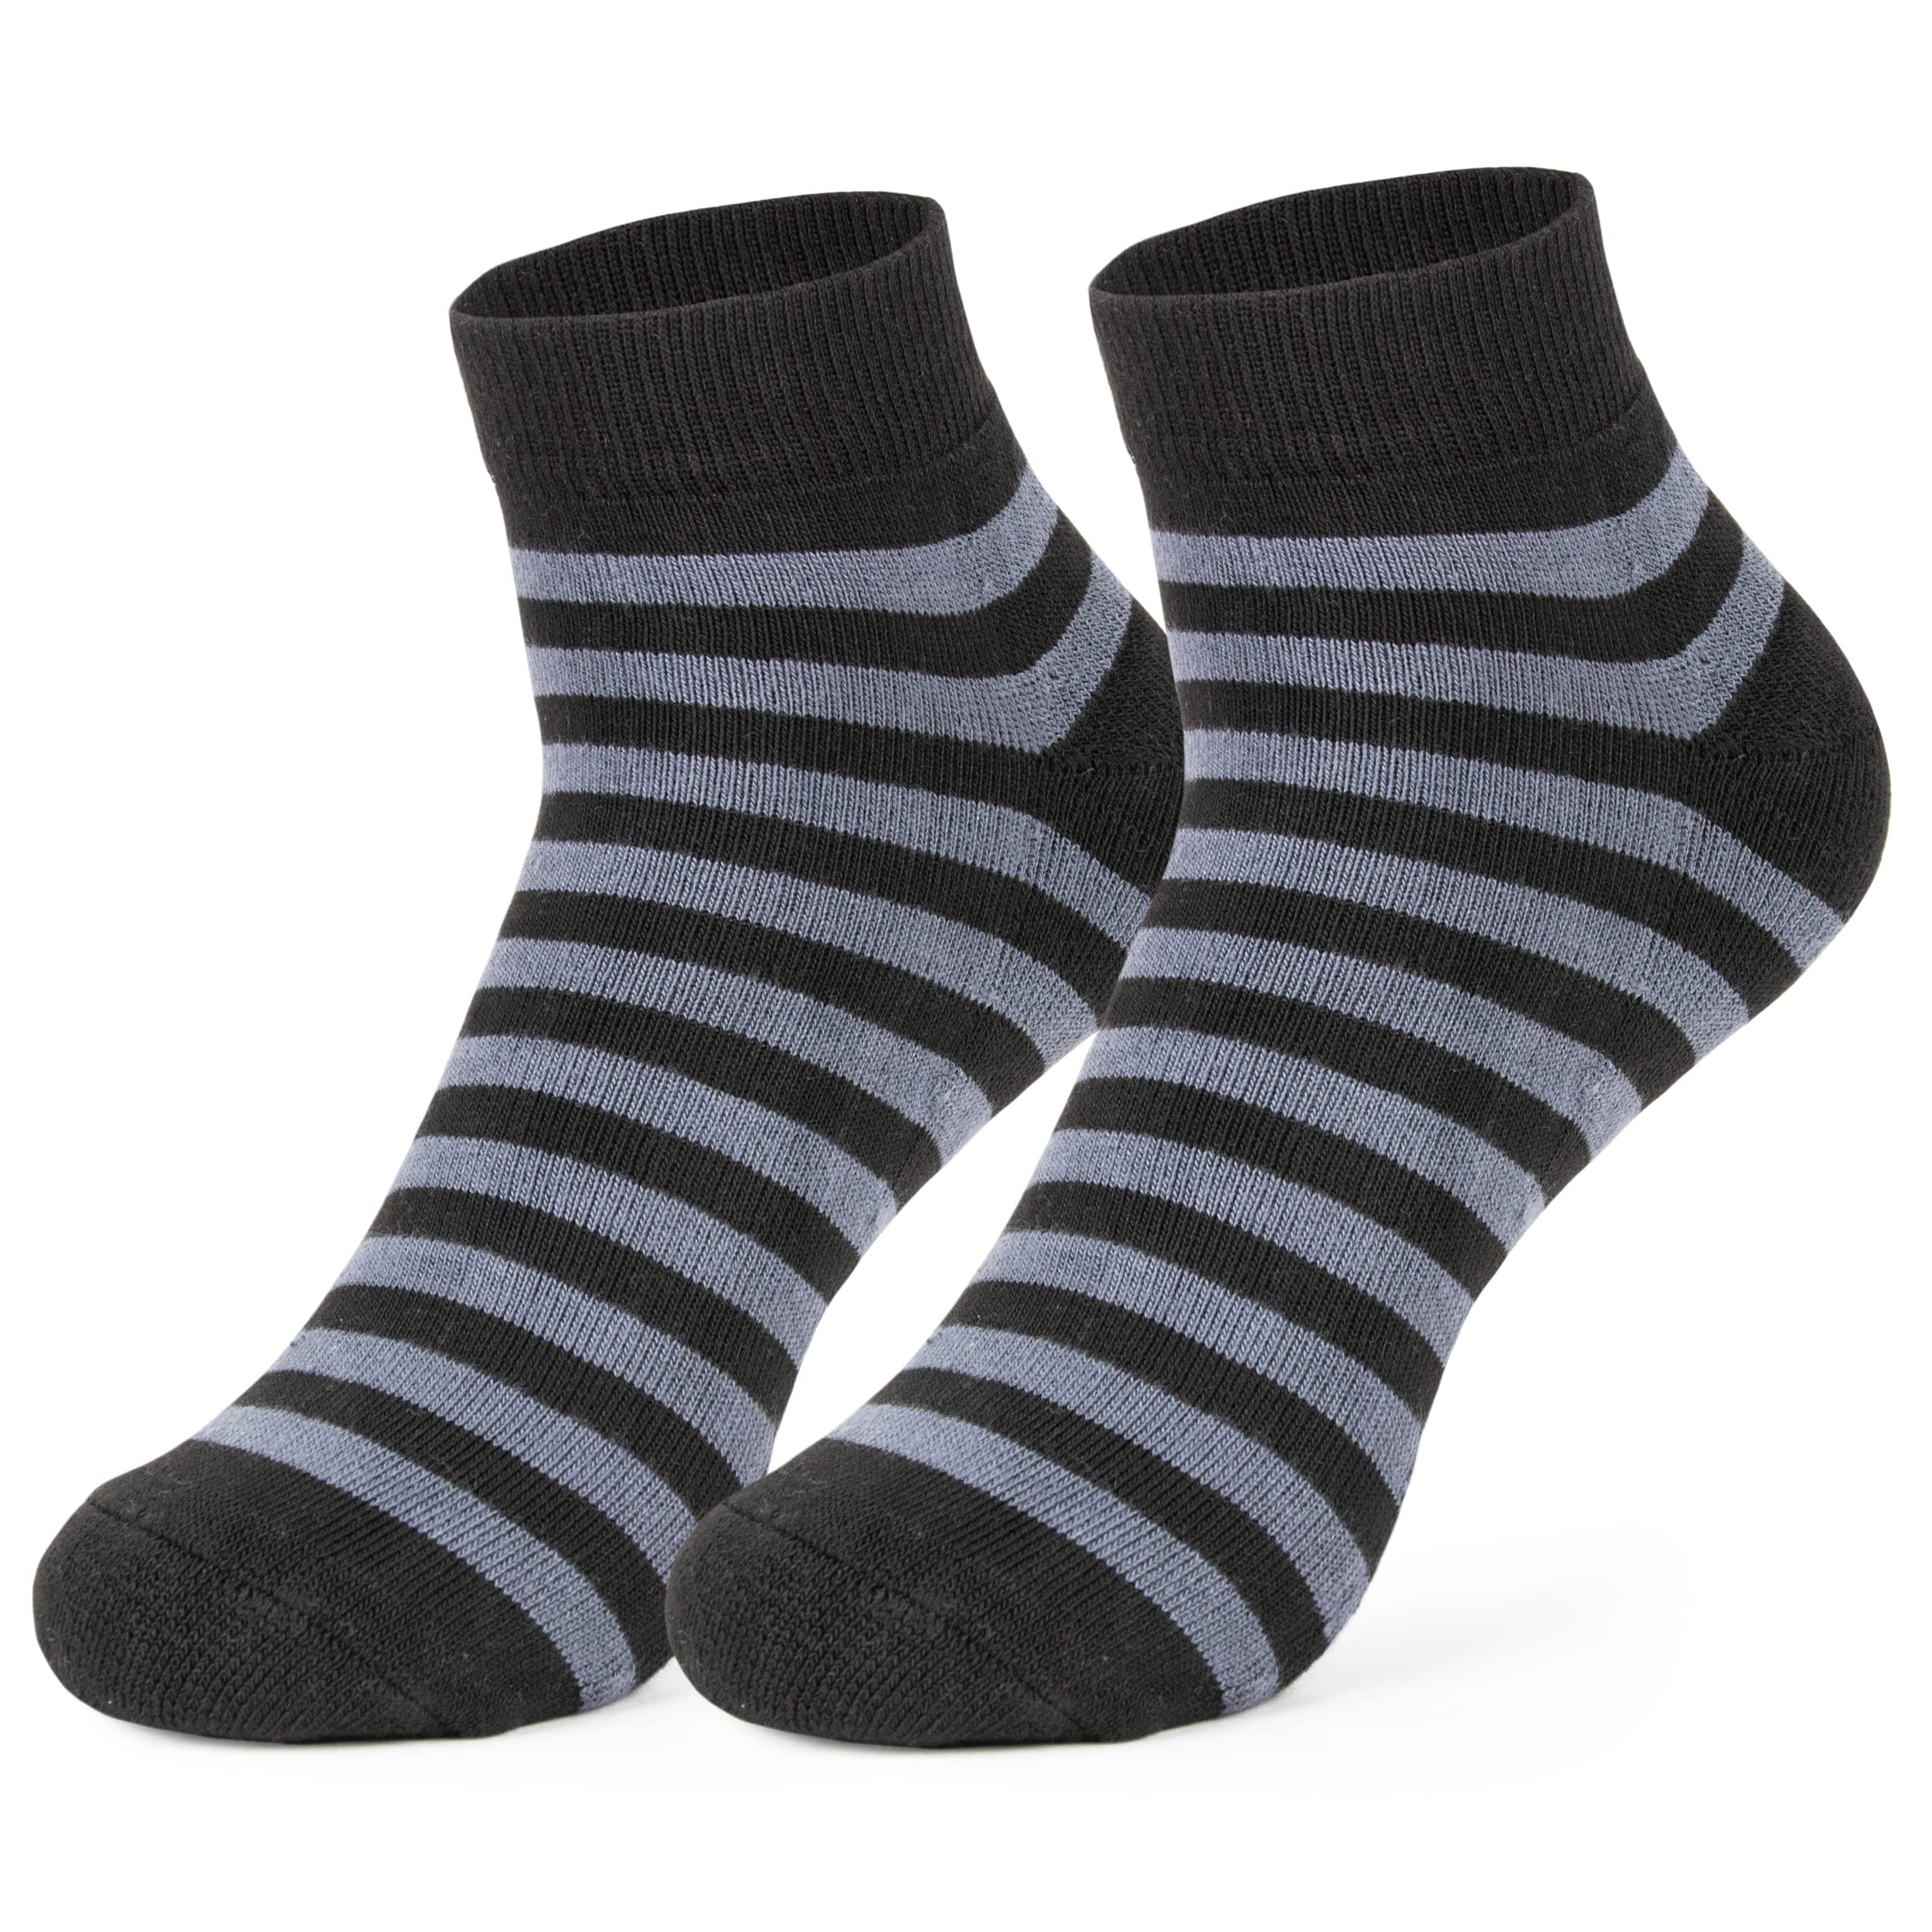 Mush Bamboo Socks for Men & Women - Ultra Soft, Breathable, Odor Control with Mesh Design Ankle socks for running, exercise & sports (Assortedset, 3)